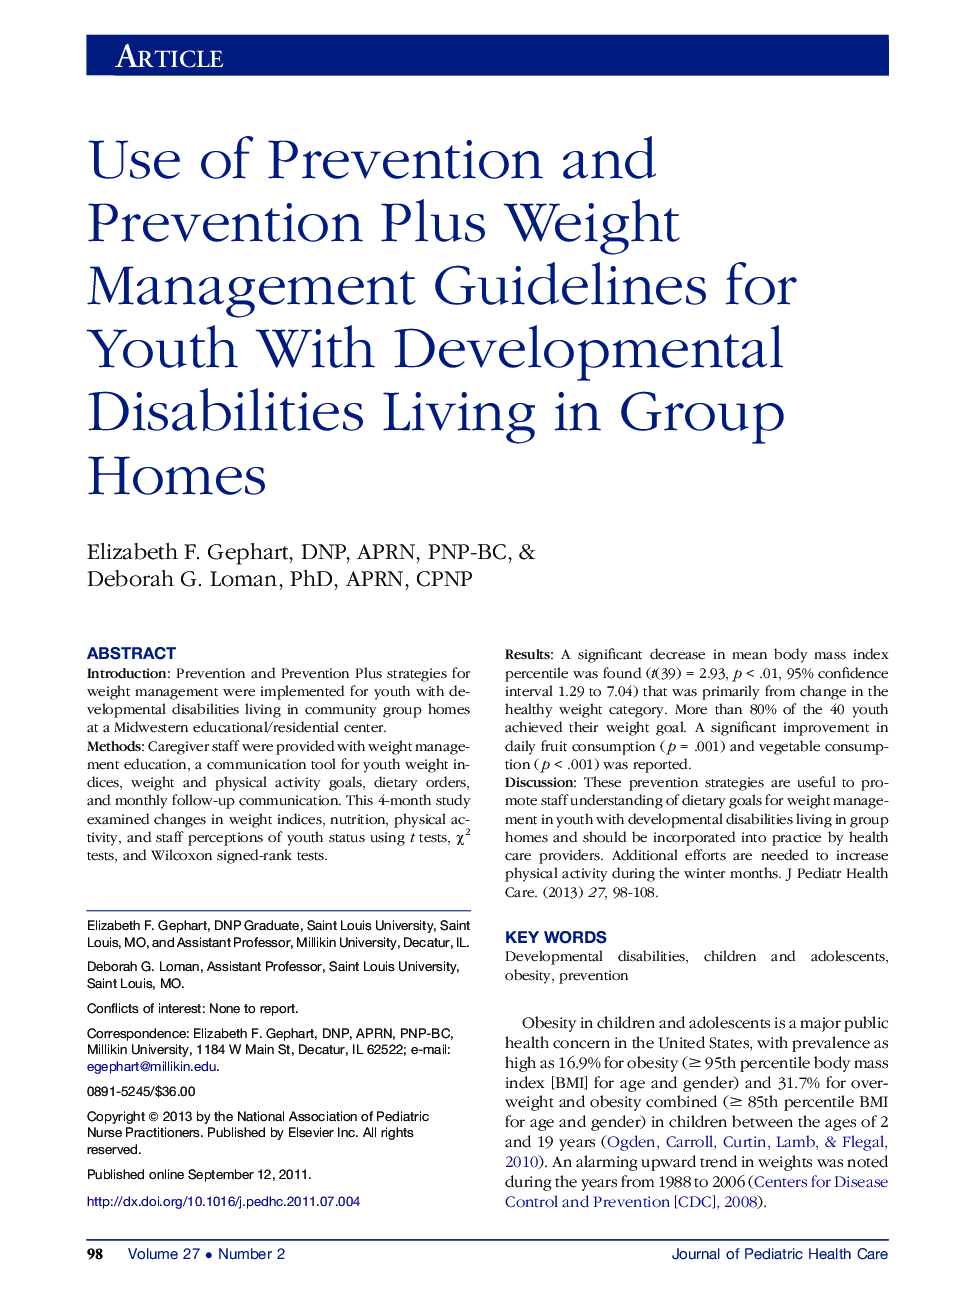 مقررات پیشگیری و پیشگیری علاوه بر رهنمودهای مدیریت وزن برای جوانان مبتلا به اختلالات رشدی زندگی در خانه های گروهی 